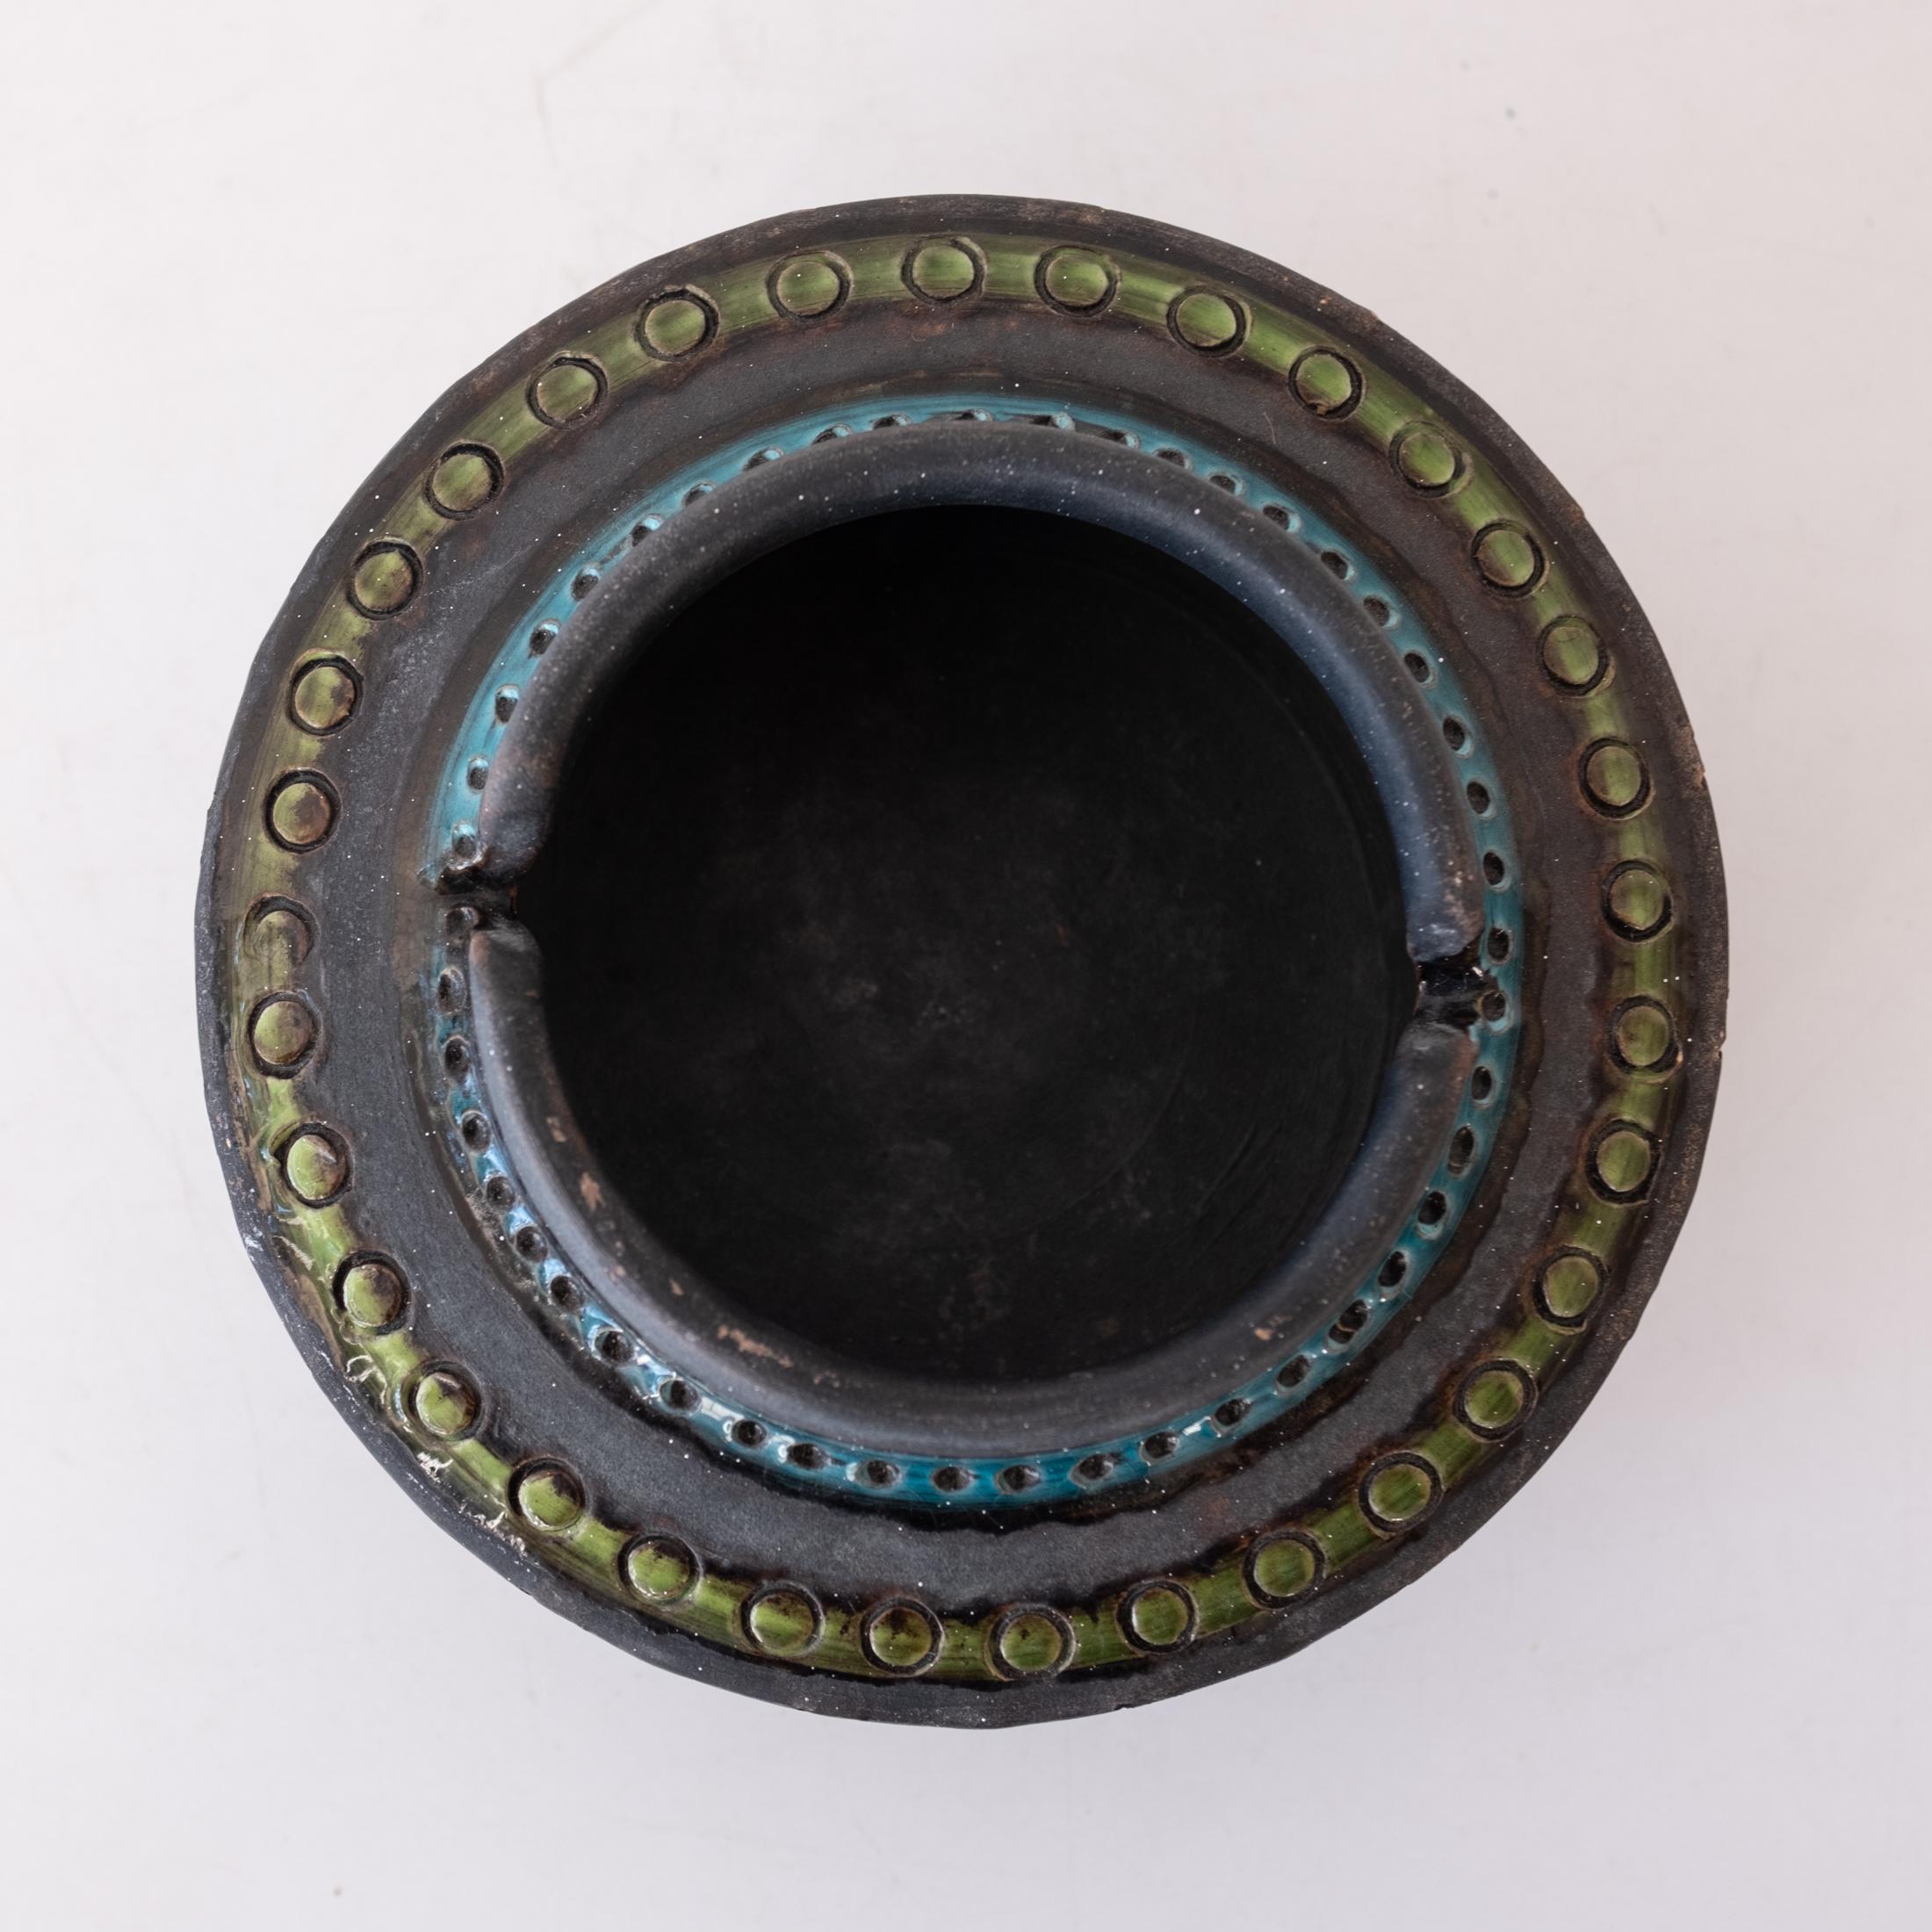 Cendrier en céramique italienne de Bitossi ou Catch All. Glaçure bleue et noire avec un motif intérieur. Signé Italy et un B, pour Bitossi. Importé par Raymor. Italie, années 1960